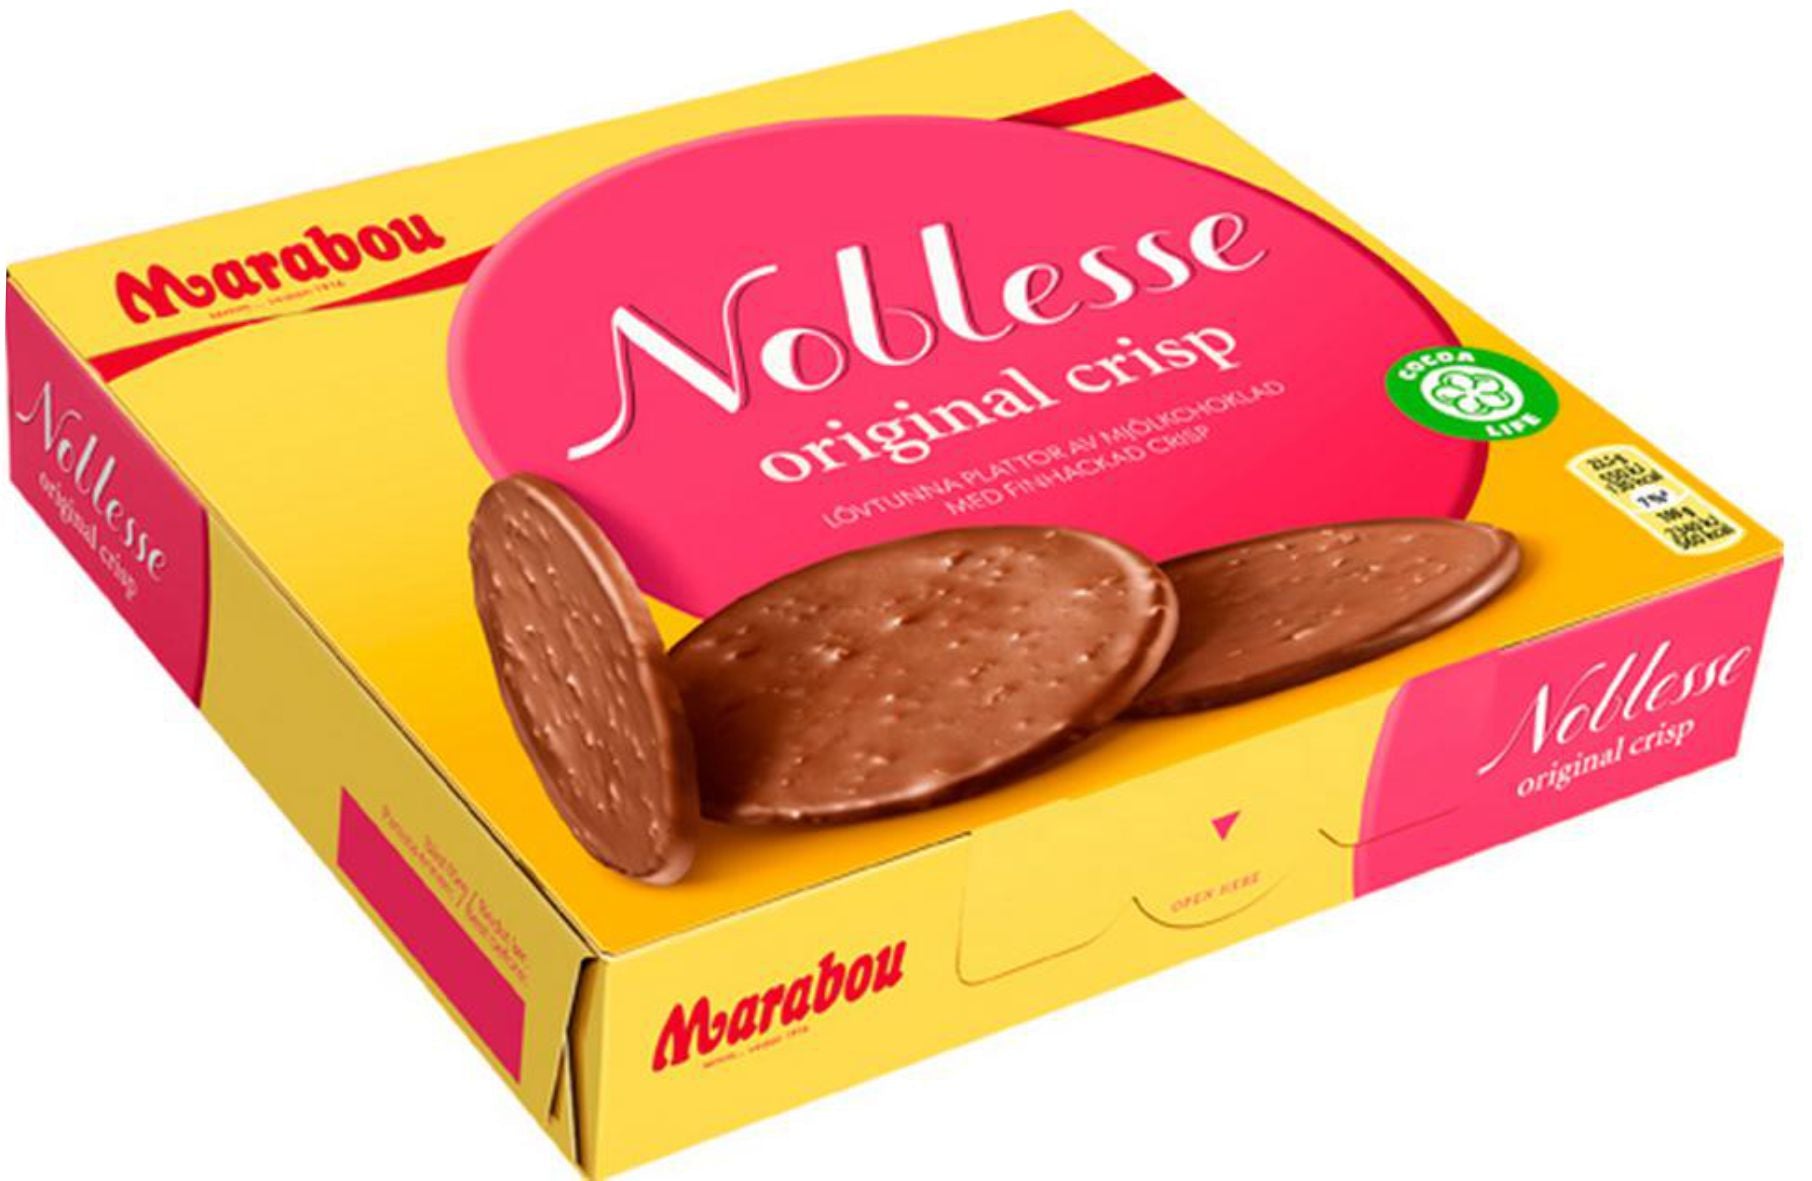 Chokladask - Noblesse Orginal Chokladask - Noblesse Original Crisp